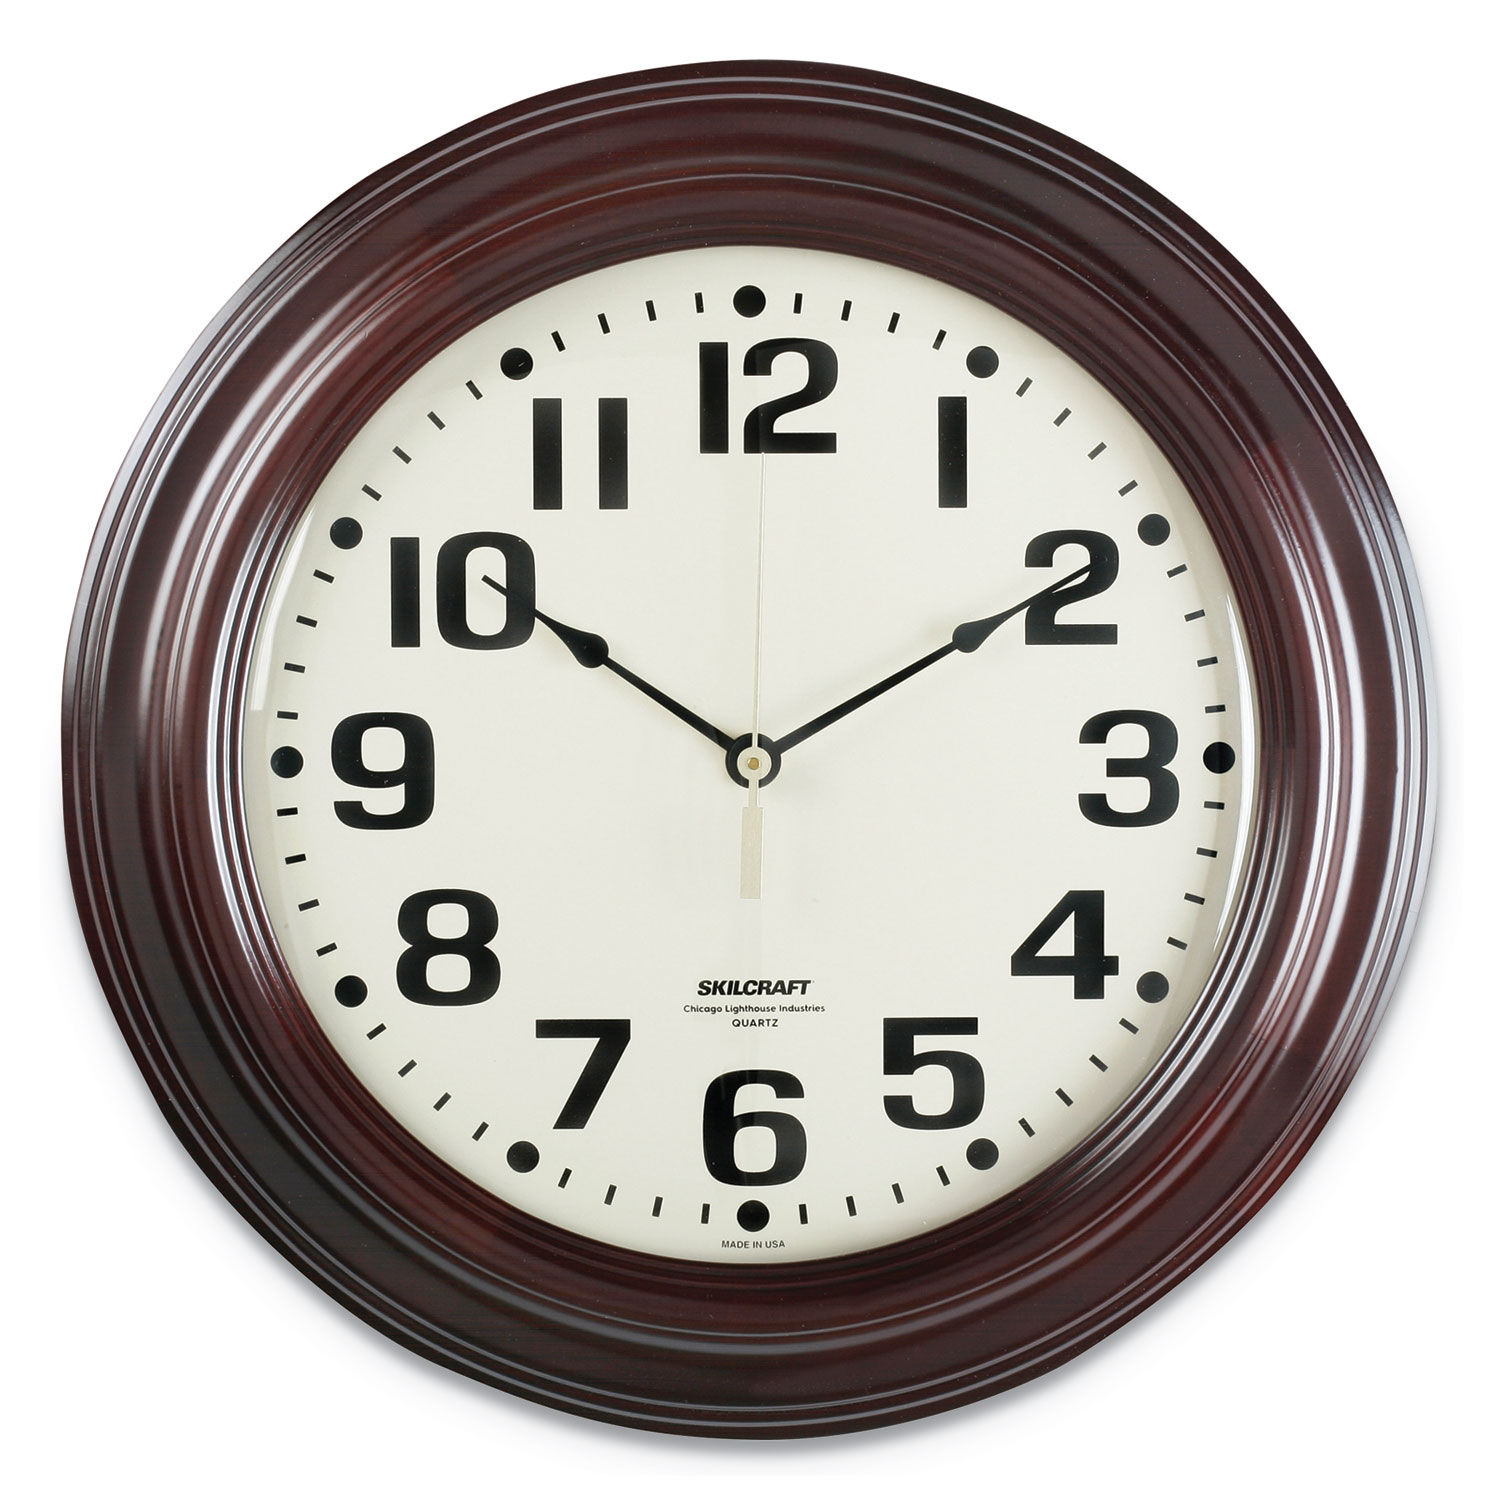 SKILCRAFT Mahogany Wall Clock 16" Overall Diameter, Mahogany Case, 1 AA (sold separately), GSA 664501421690